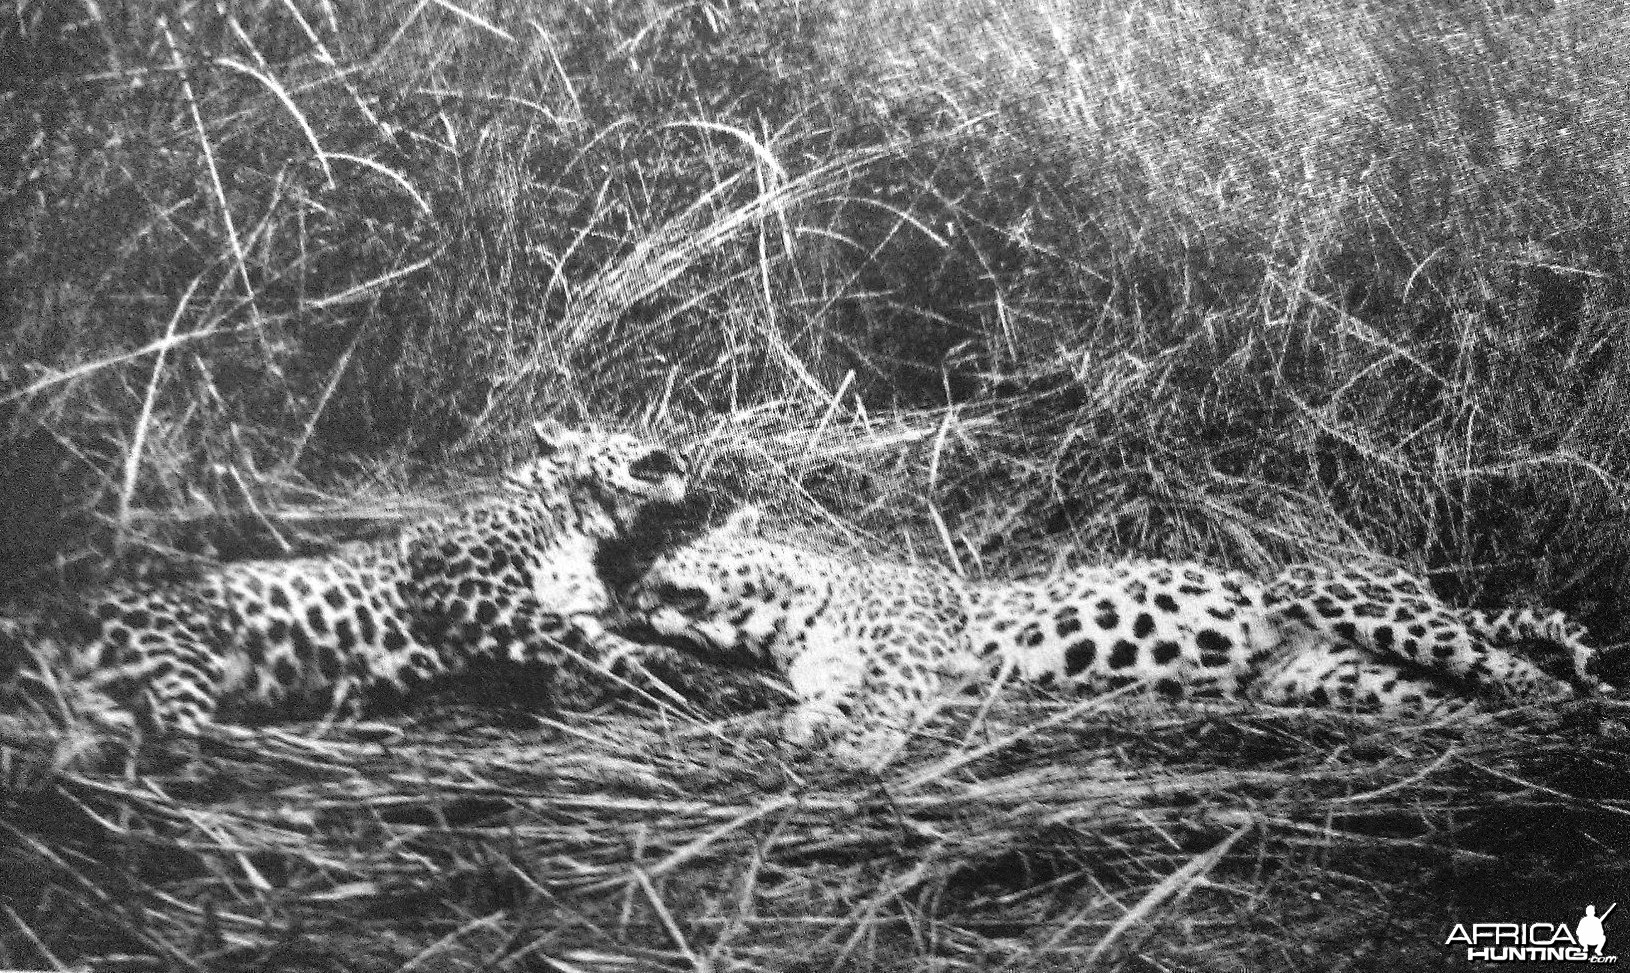 Leopard India